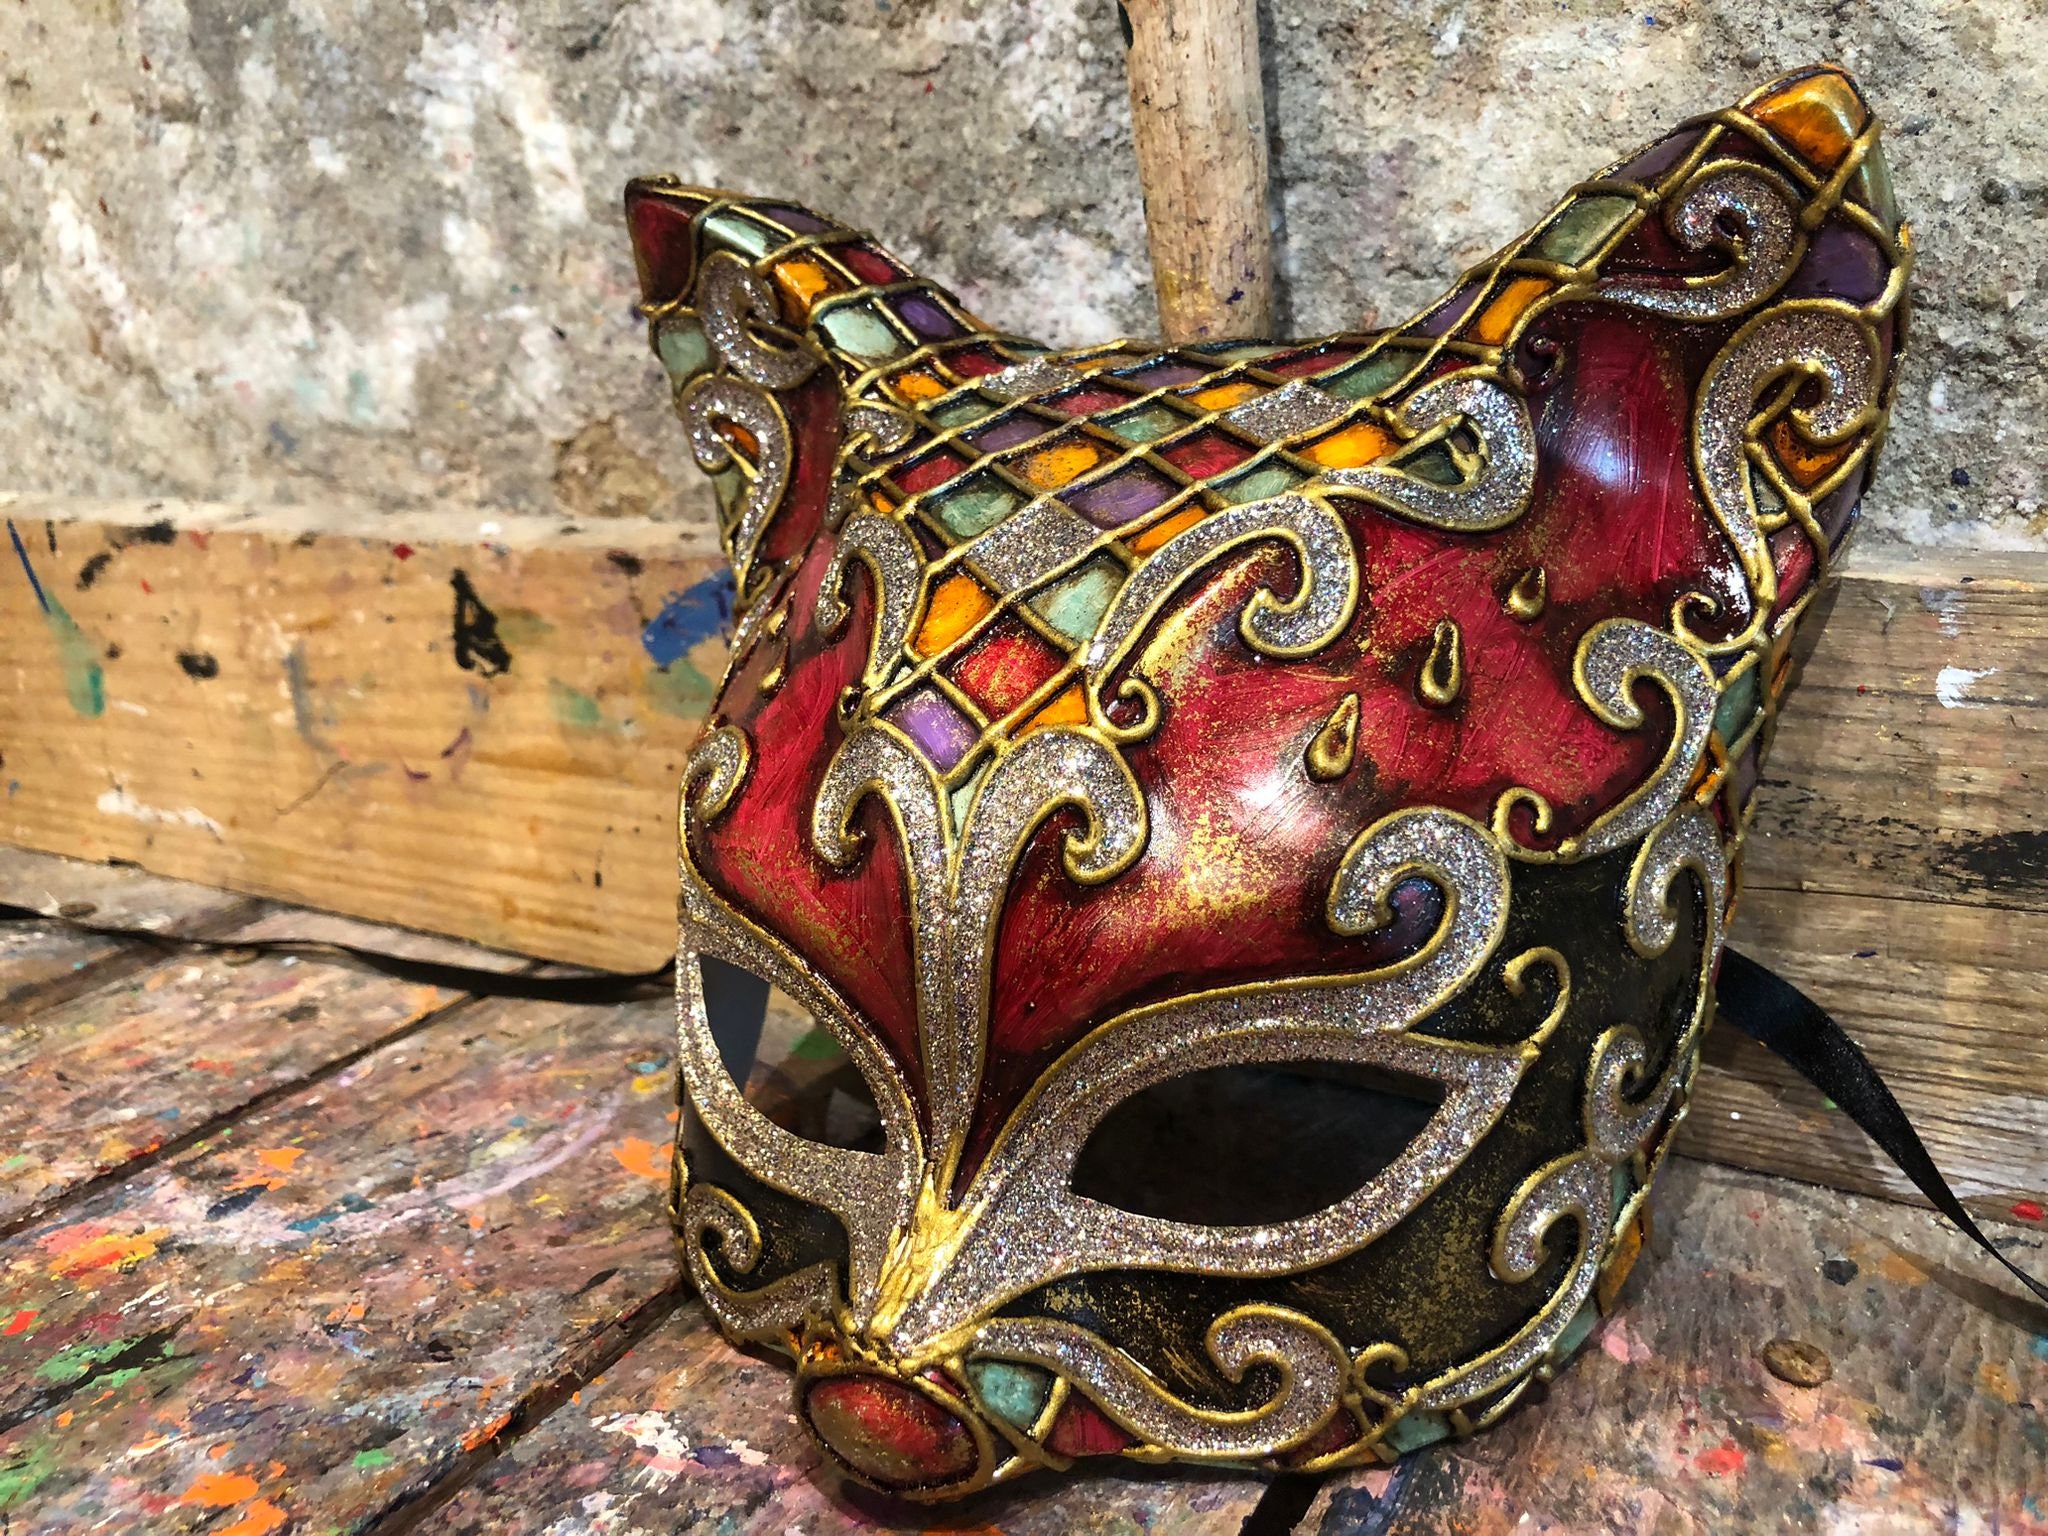 Masque De Carnaval En Cours De Décoration Et Matériaux Pour Sa